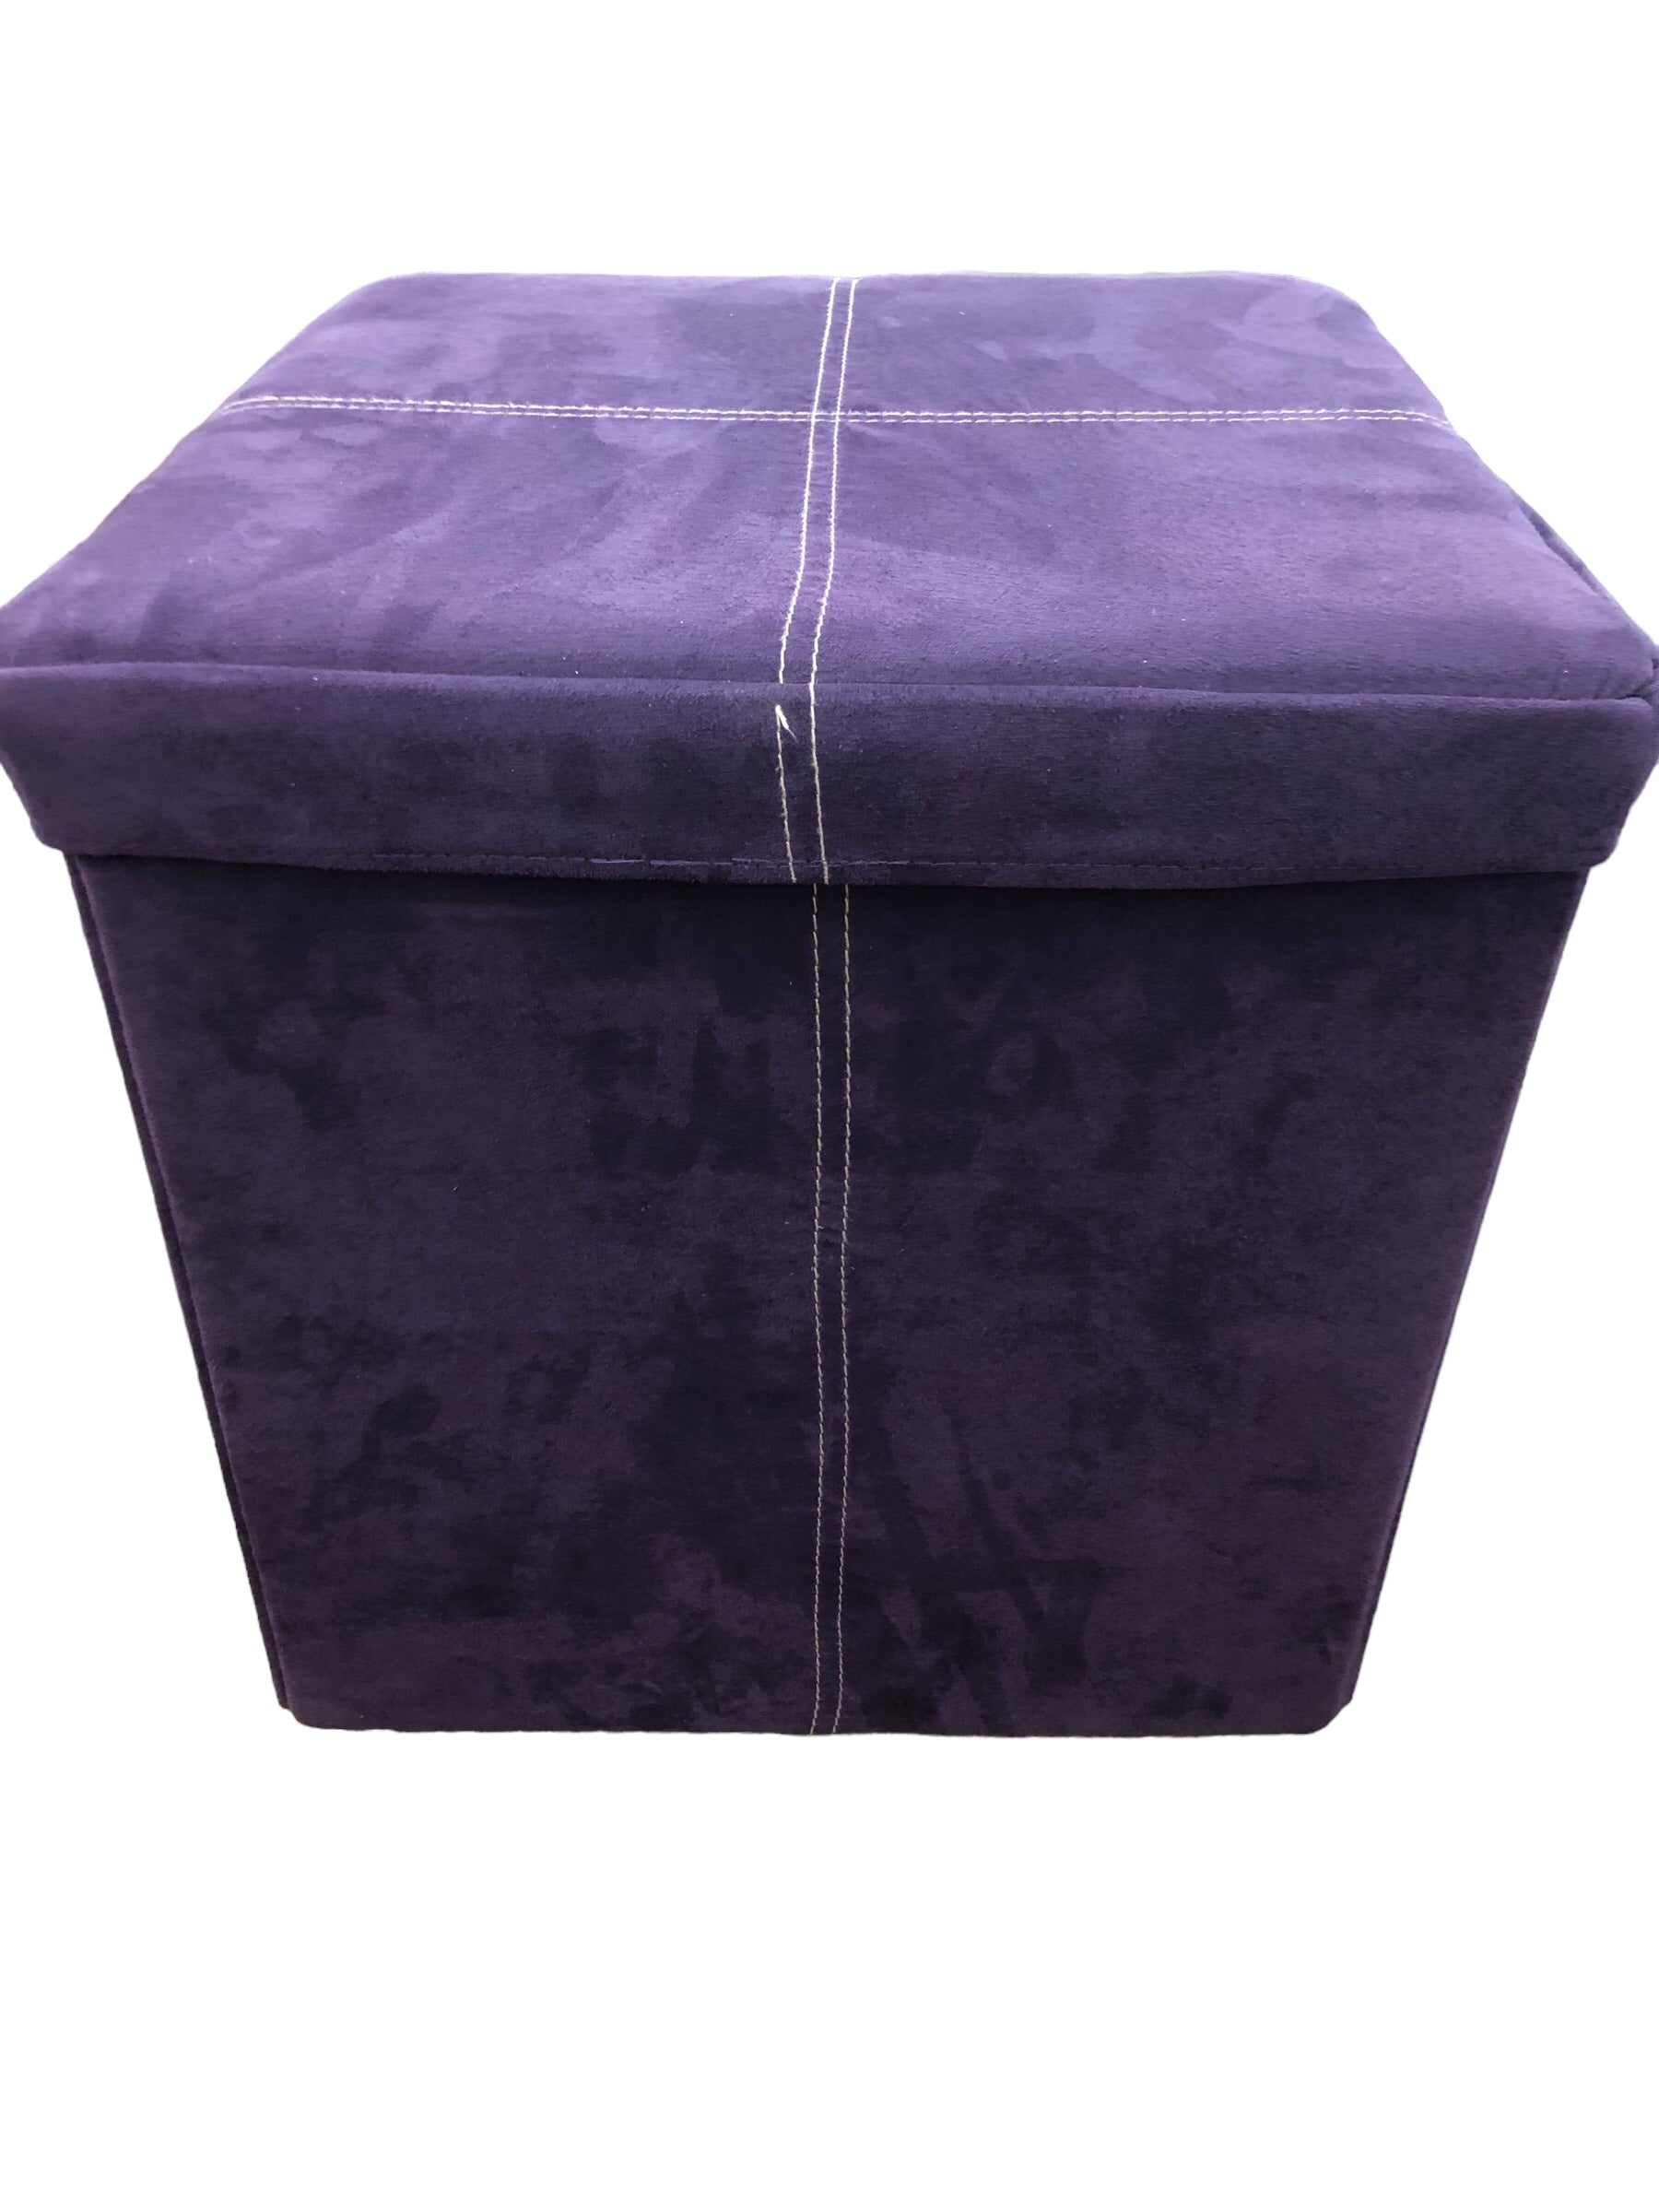 Purple foot stool (Storage)